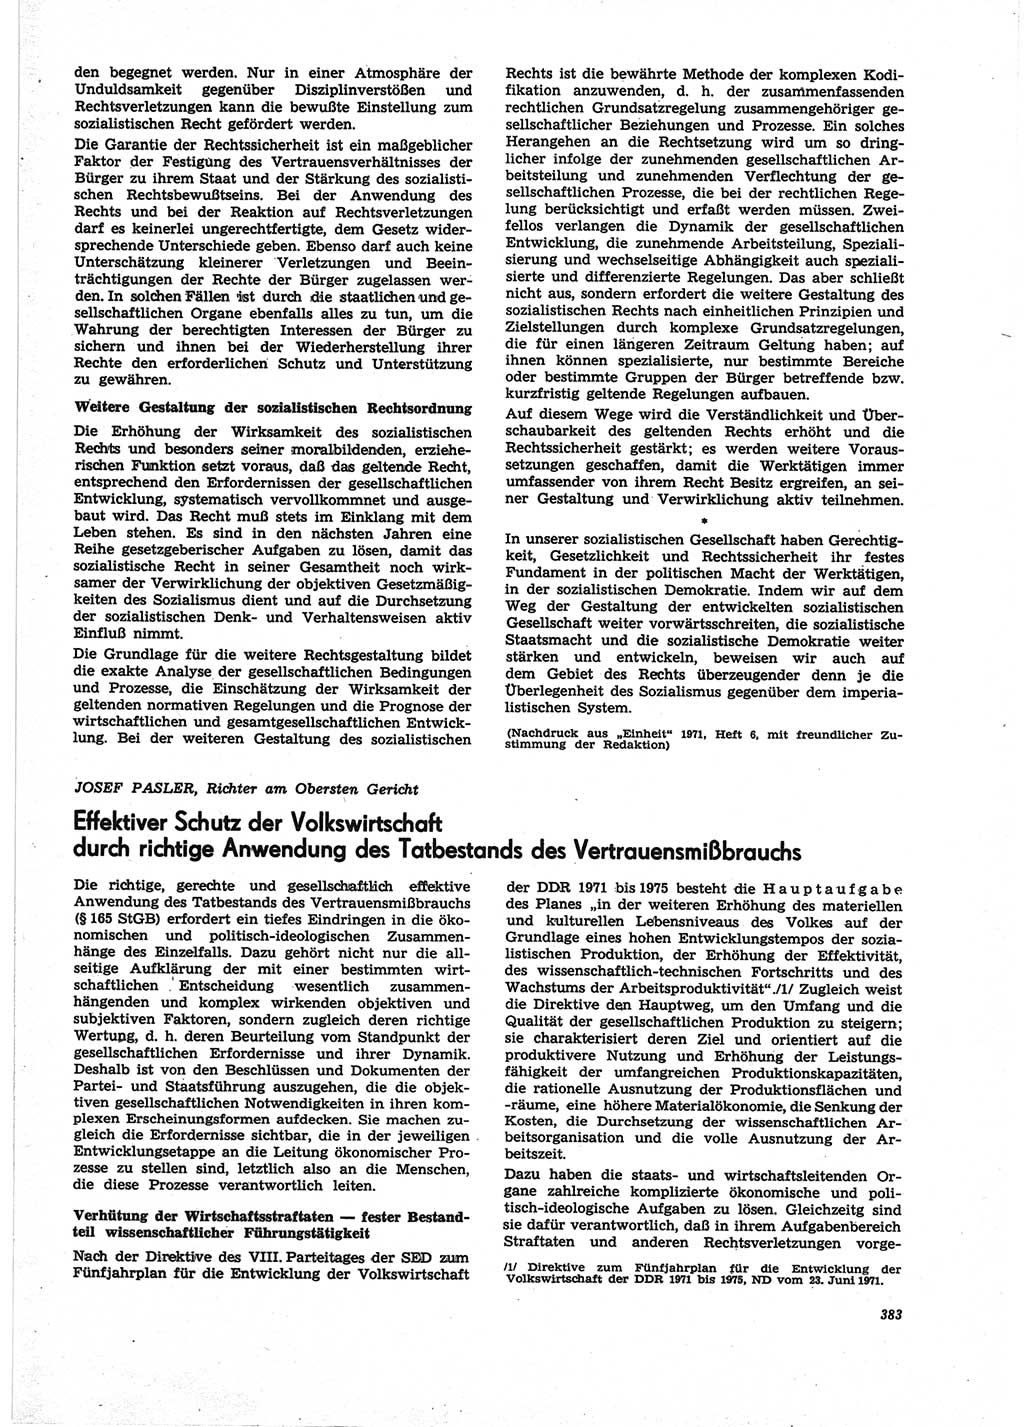 Neue Justiz (NJ), Zeitschrift für Recht und Rechtswissenschaft [Deutsche Demokratische Republik (DDR)], 25. Jahrgang 1971, Seite 383 (NJ DDR 1971, S. 383)